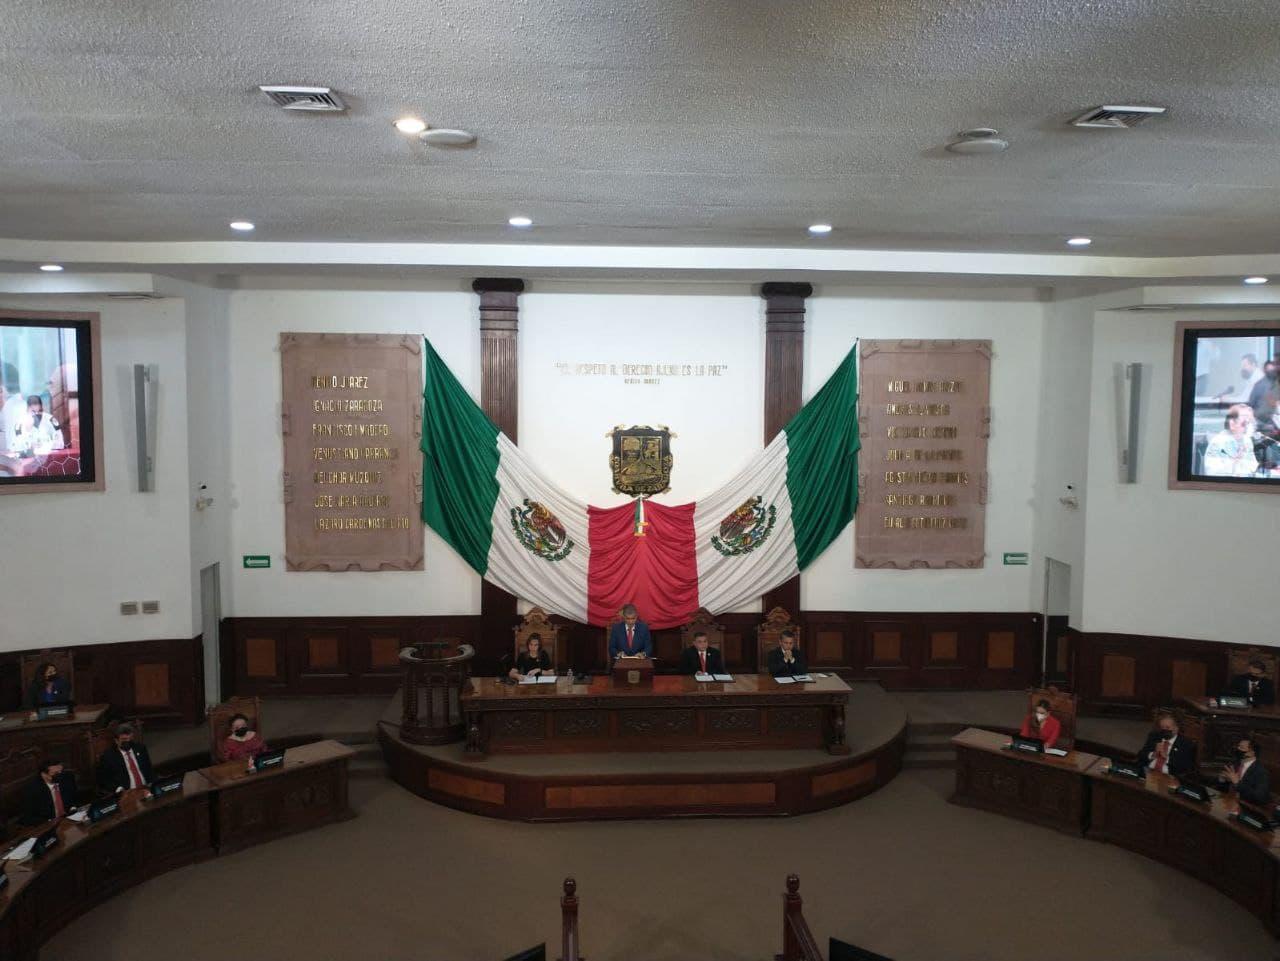 Gobernador de Coahuila pide a Poderes Legislativo y Judicial actualiza leyes y consolidar sistema de justicia